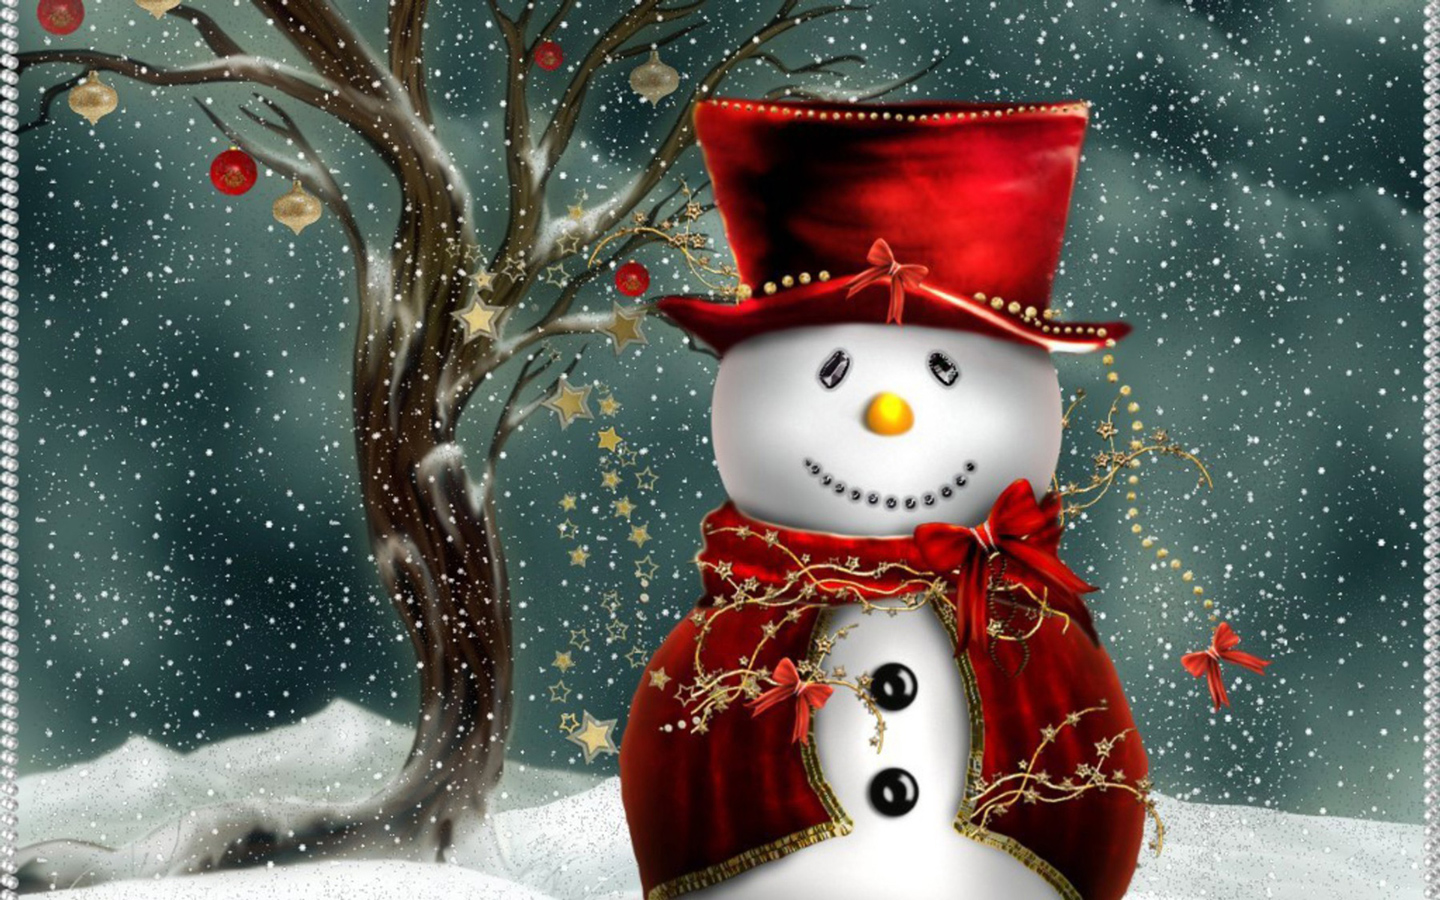 Size Desktop Wallpaper Of Cute Christmas Snowman